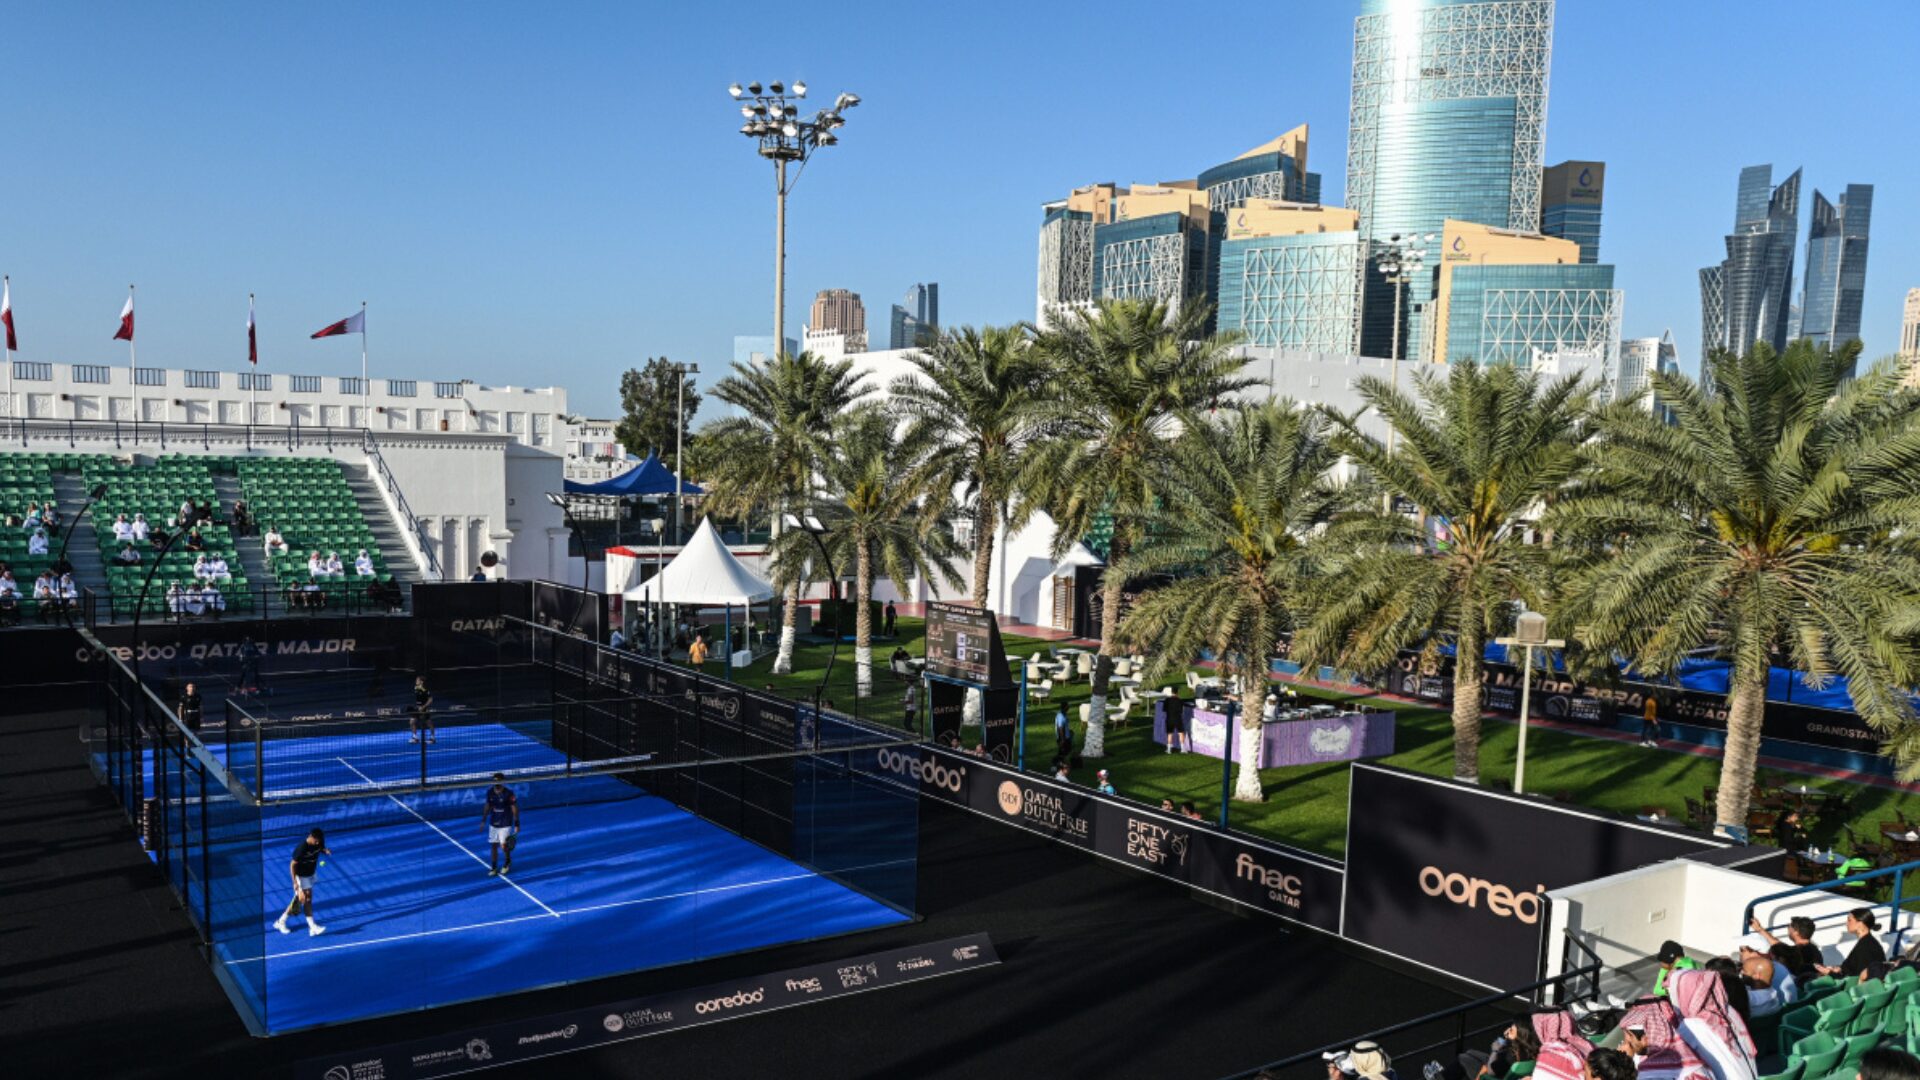 Premier Padel Qatar Major: schemat för semifinalerna